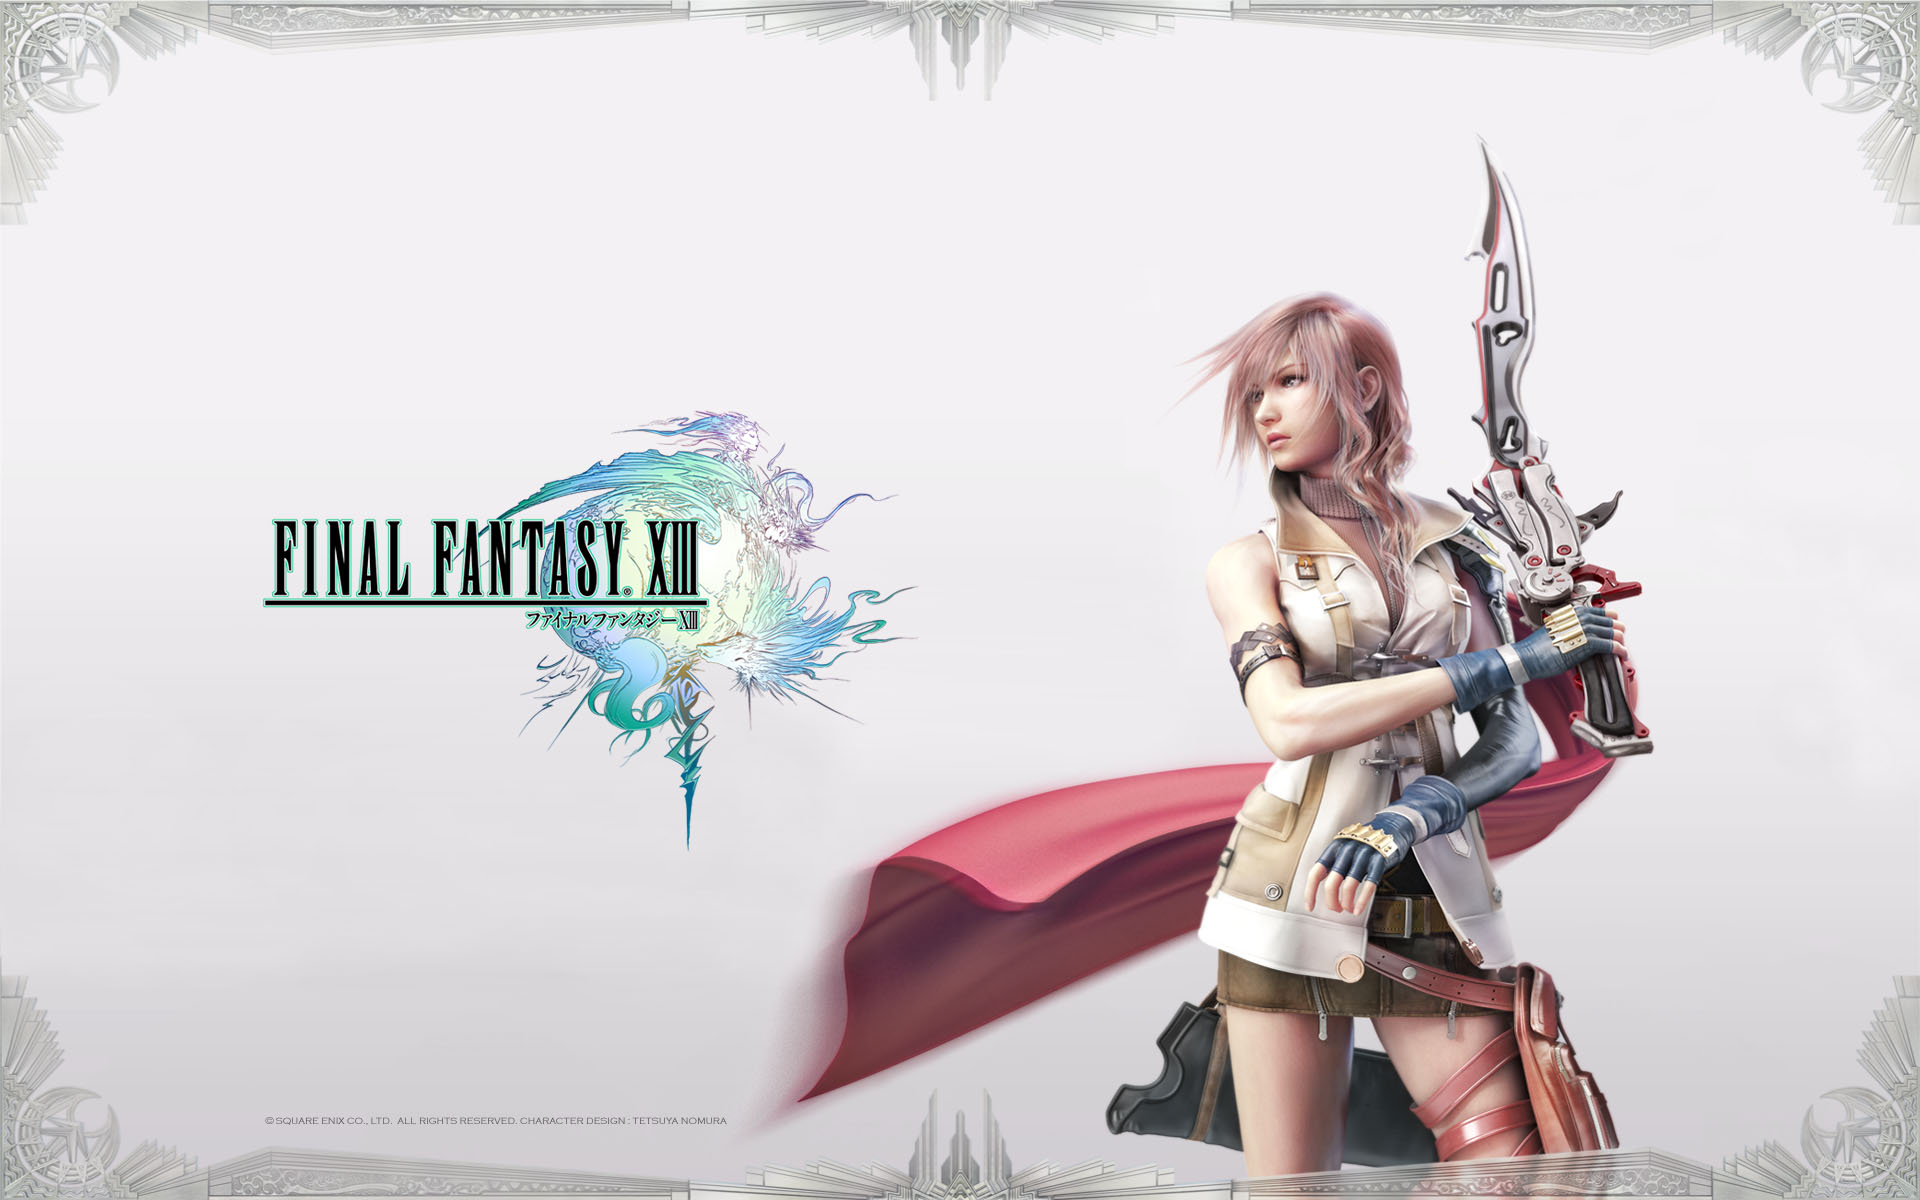 閃光 Ff13 Save 50 On Final Fantasy Xiii On Steam